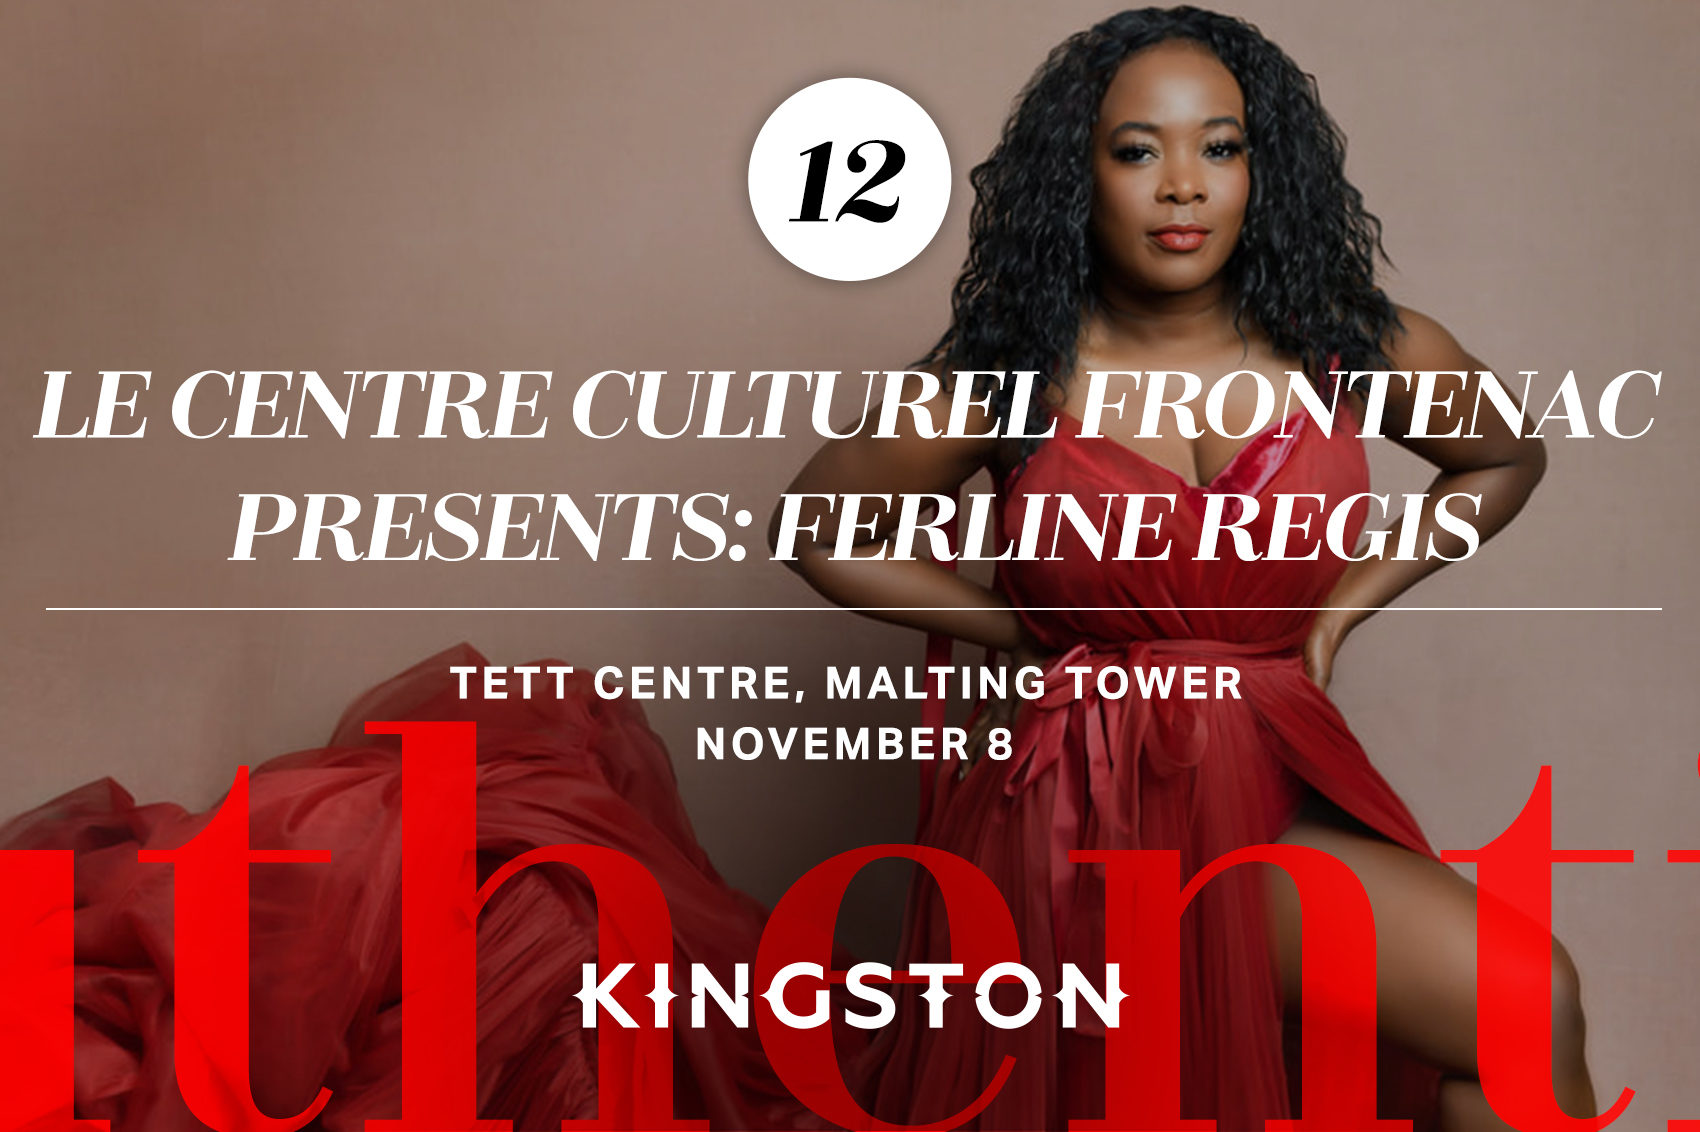 Le Centre Culturel Frontenac presents: Ferline Regis